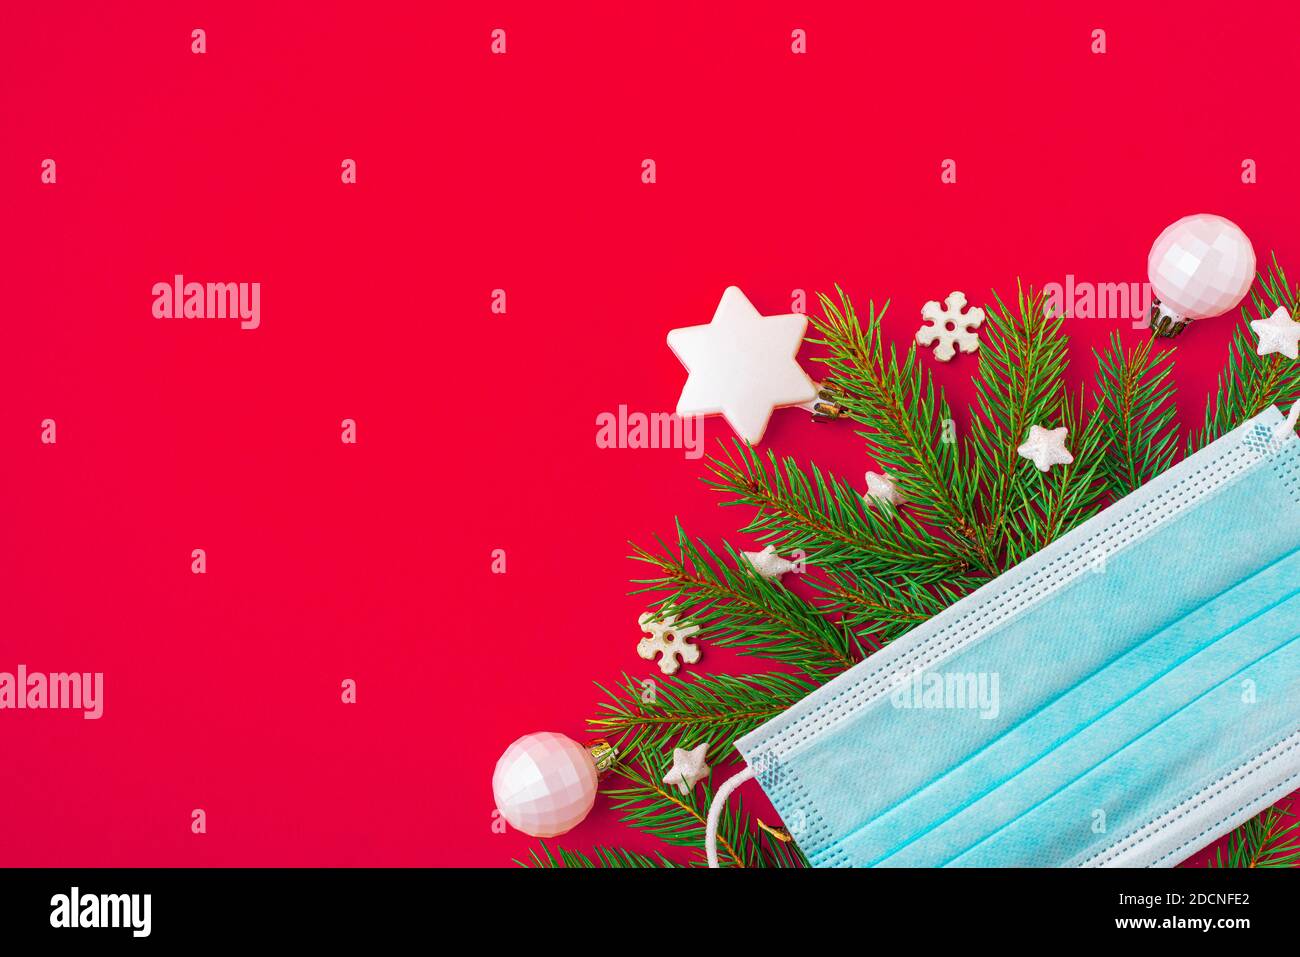 Festliches Coronavirus weihnachtskonzept aus Gesichtsmaske, Tannenbaum und Dekorationen auf rotem Hintergrund. Flach liegend. Draufsicht mit Kopierraum Stockfoto